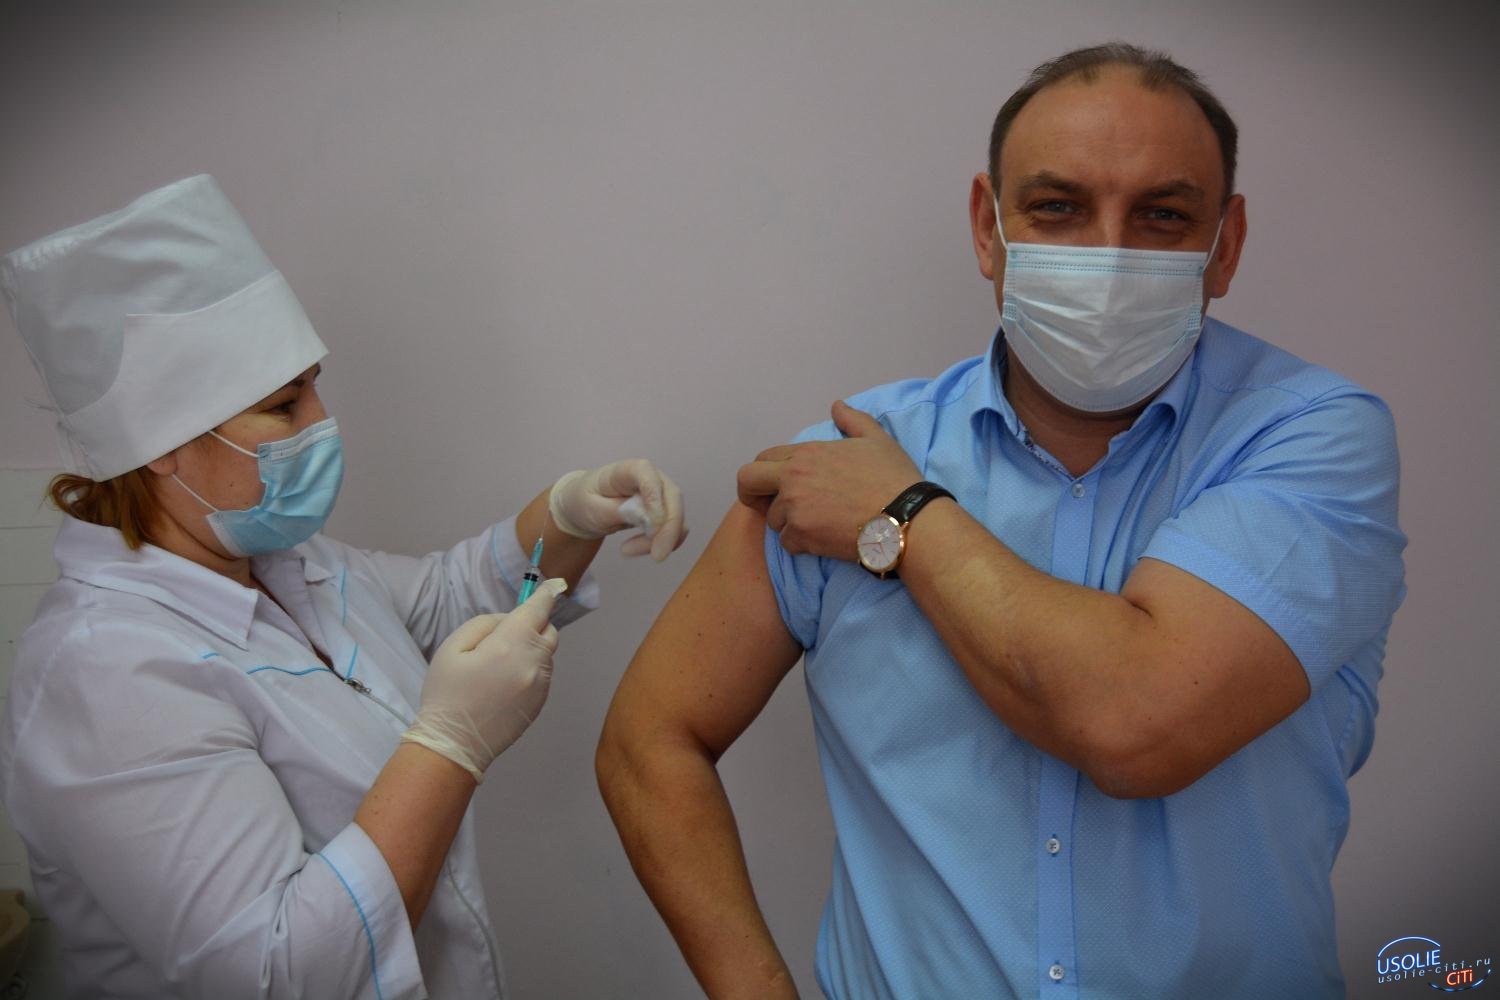 Мэр Усолья поставил третью прививку от коронавируса